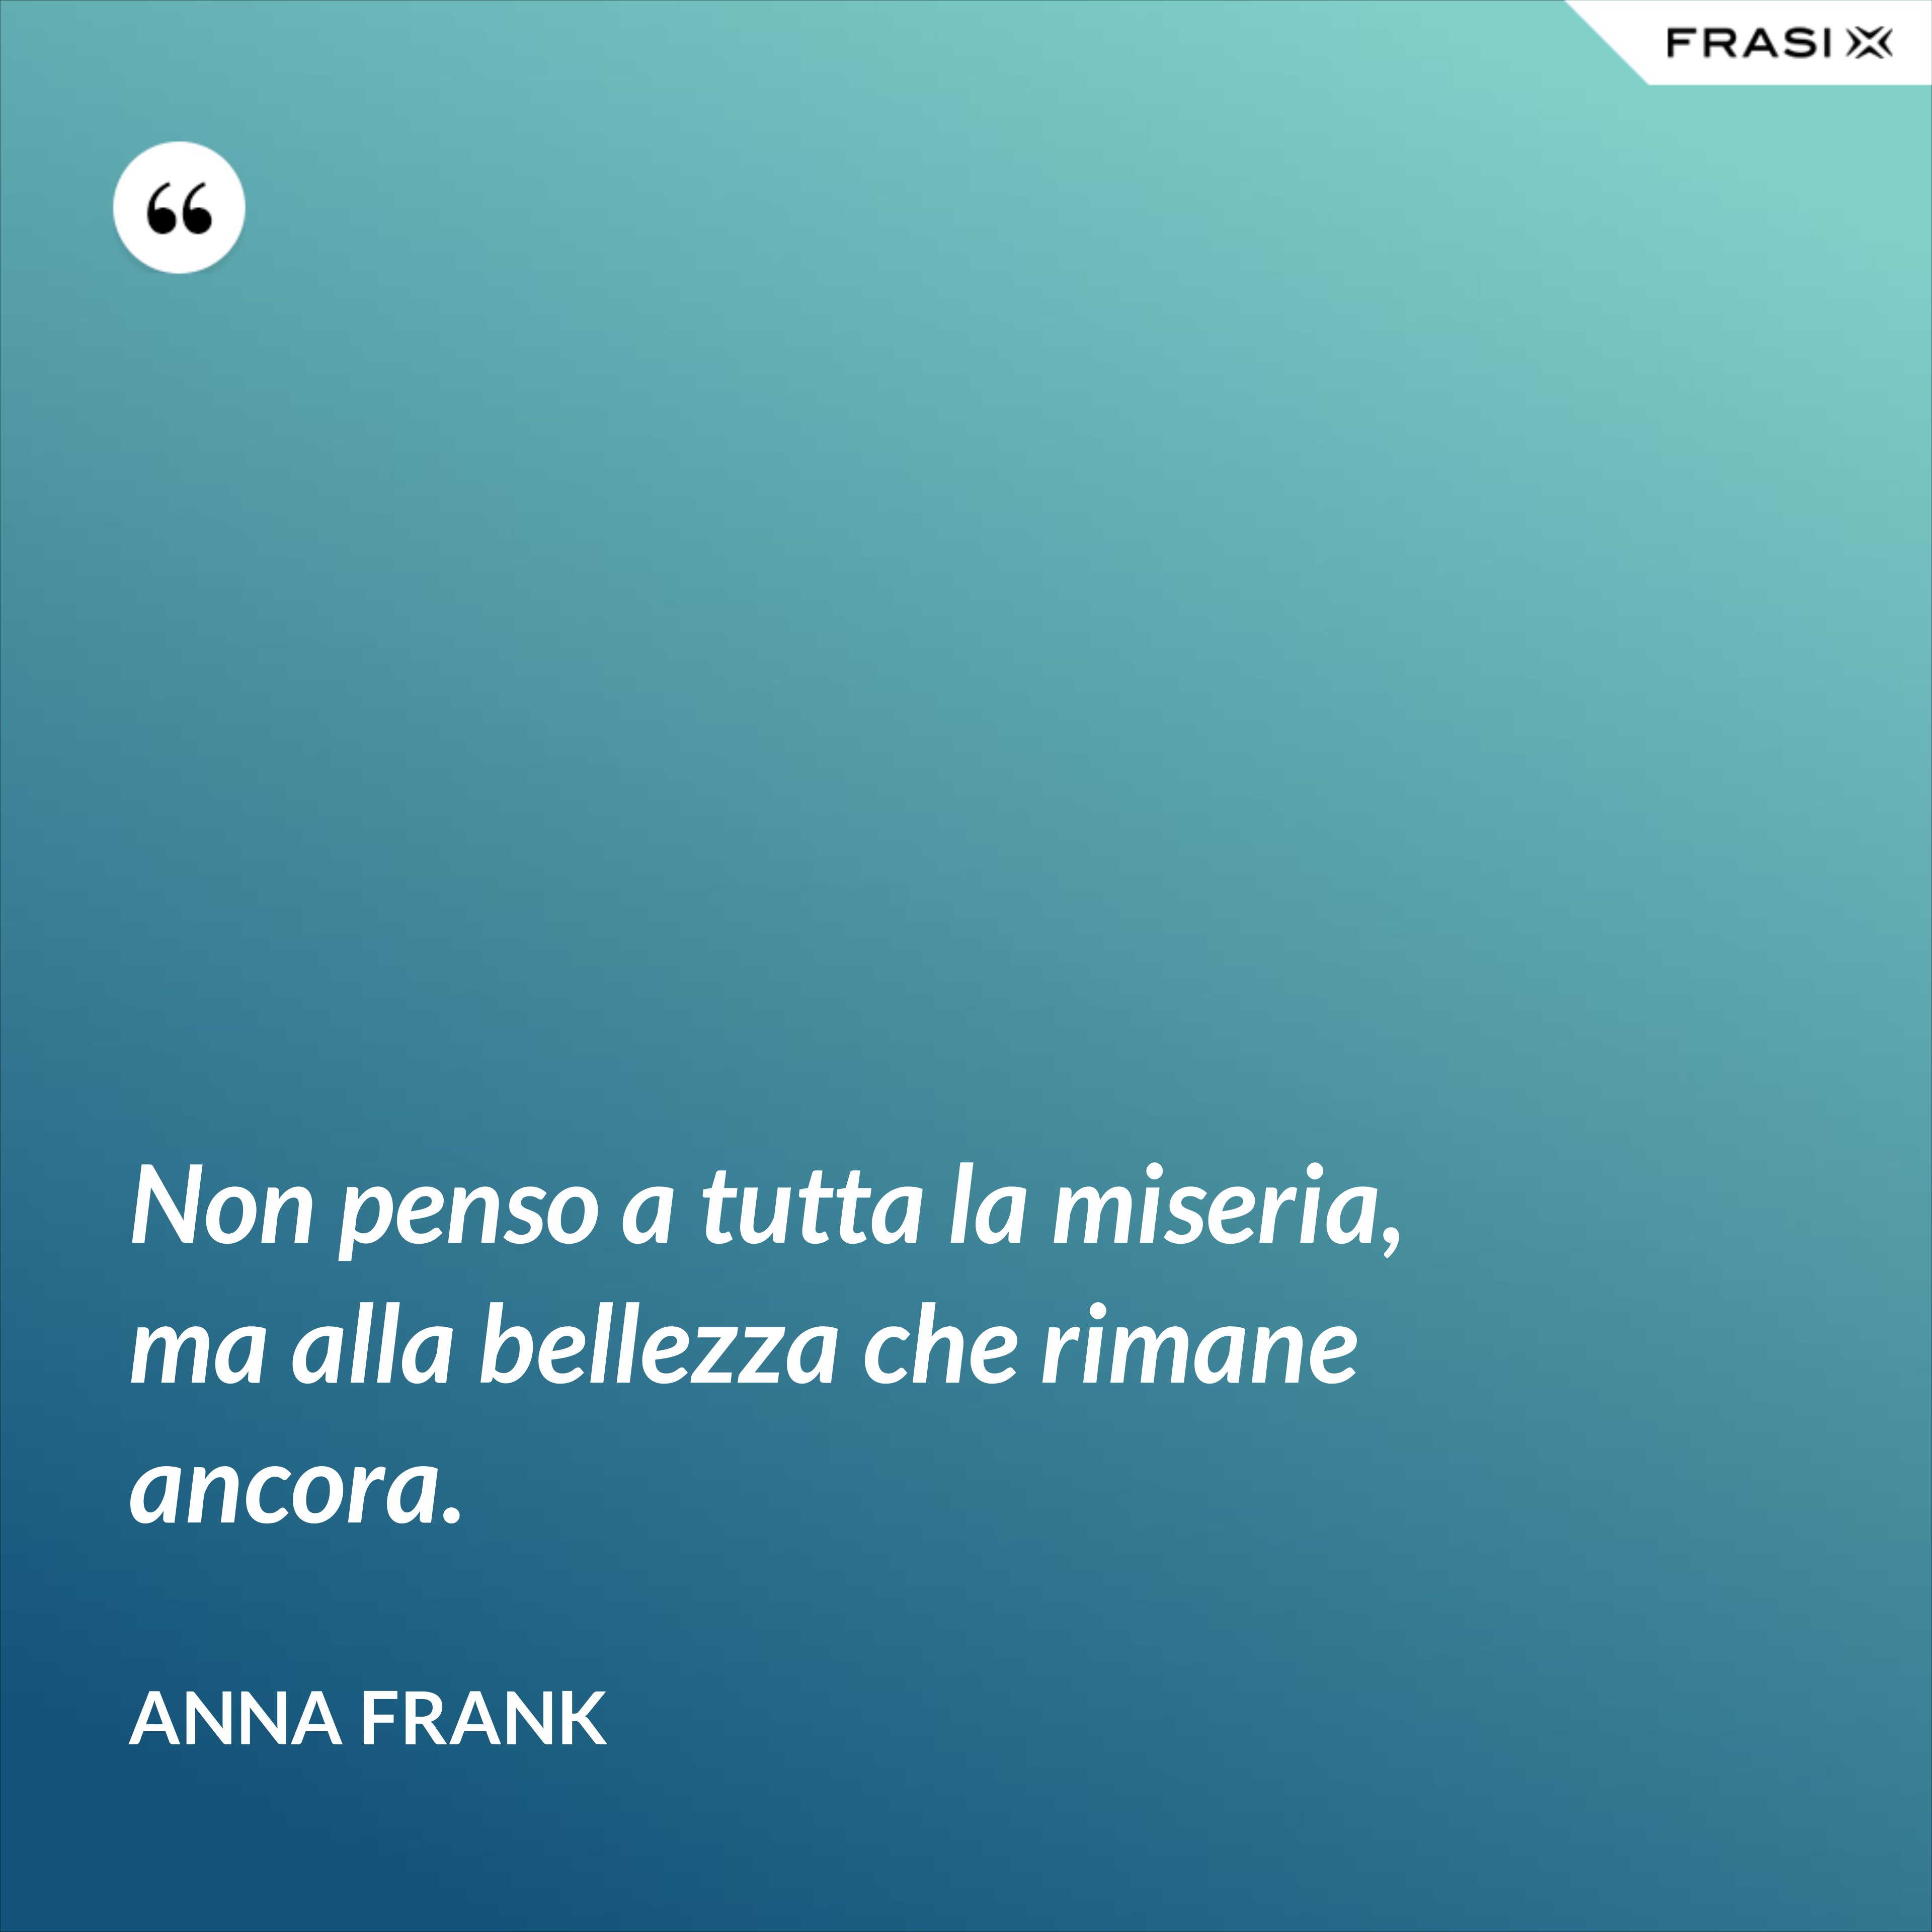 Non penso a tutta la miseria, ma alla bellezza che rimane ancora. - Anna Frank